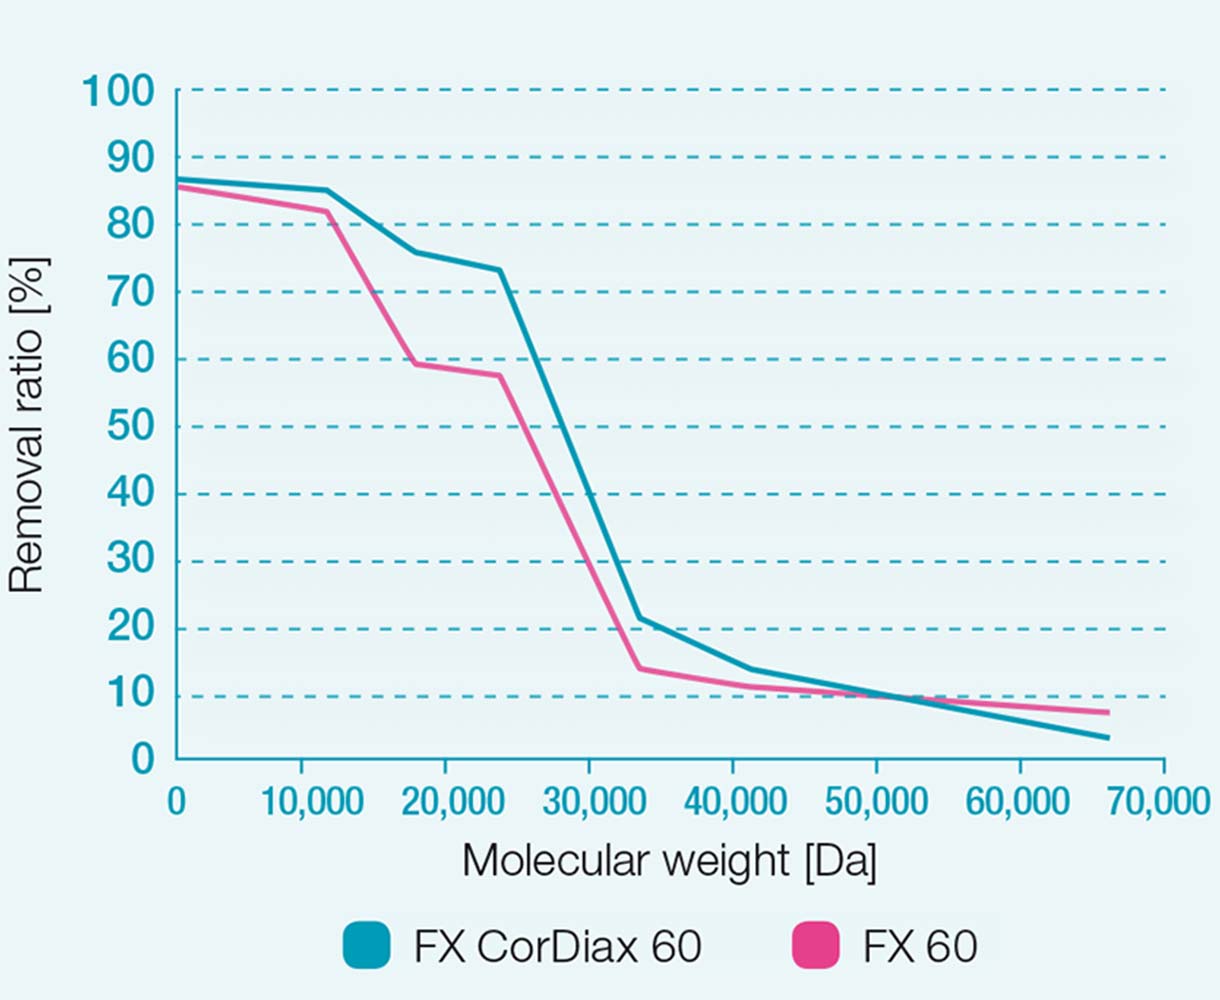 Cocientes de eliminación de los dializadores FX 60 y FX CorDiax 60